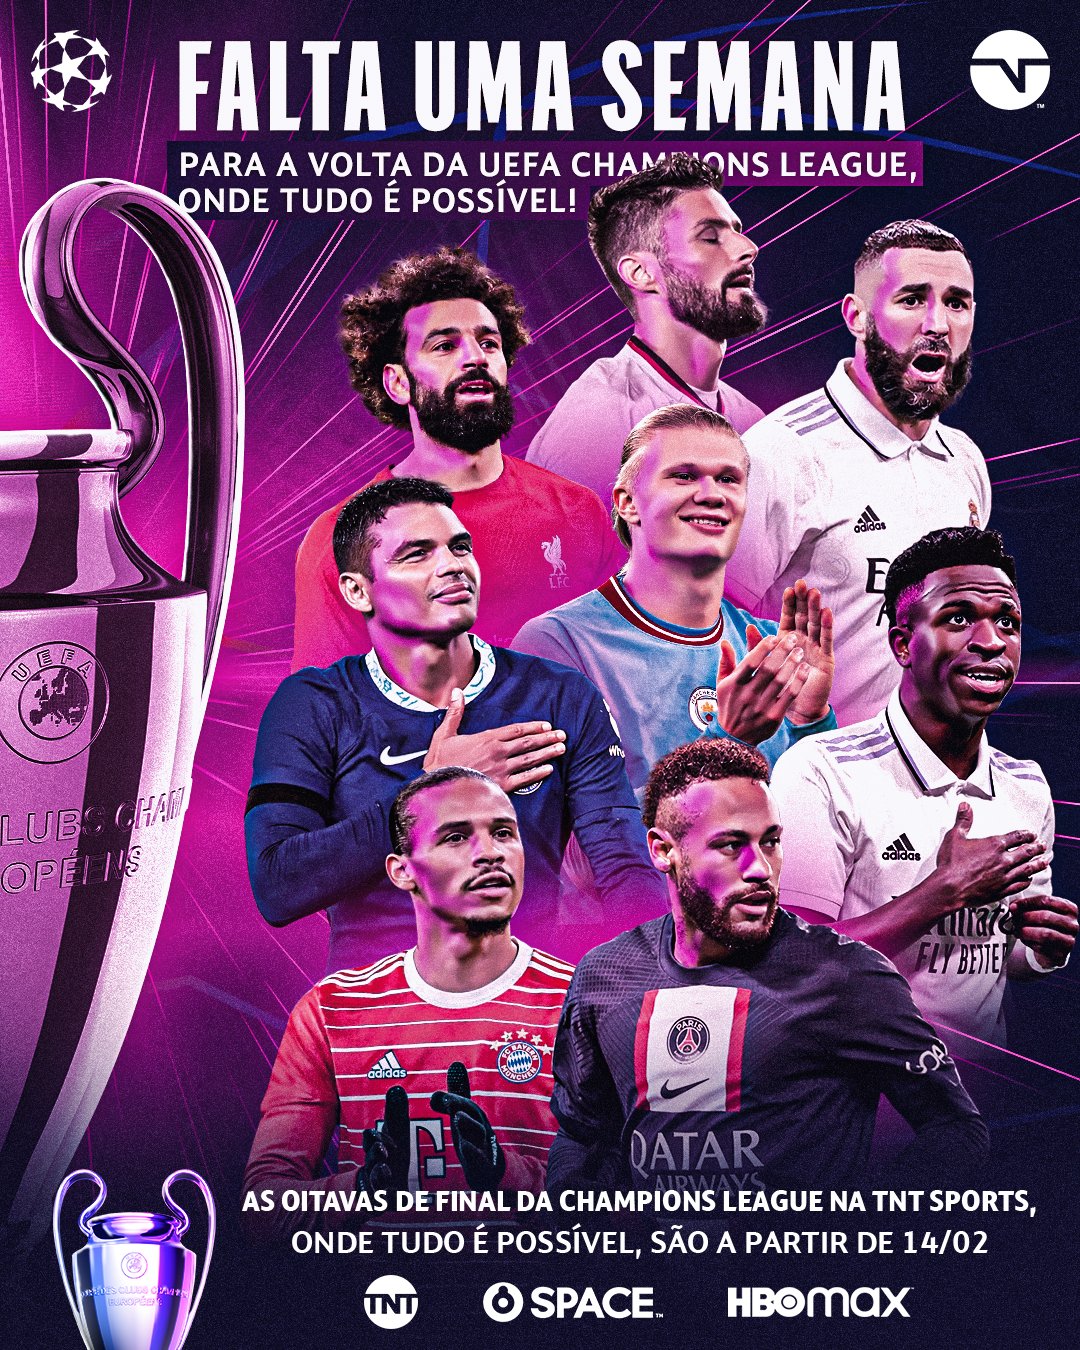 TNT Sports Brasil - HOJE TEM MAIS UEFA Champions League! Vem com a gente  que essa quarta de Liga PROMETE! . E você assiste tudo AO VIVO aqui:   #CasaDaChampions